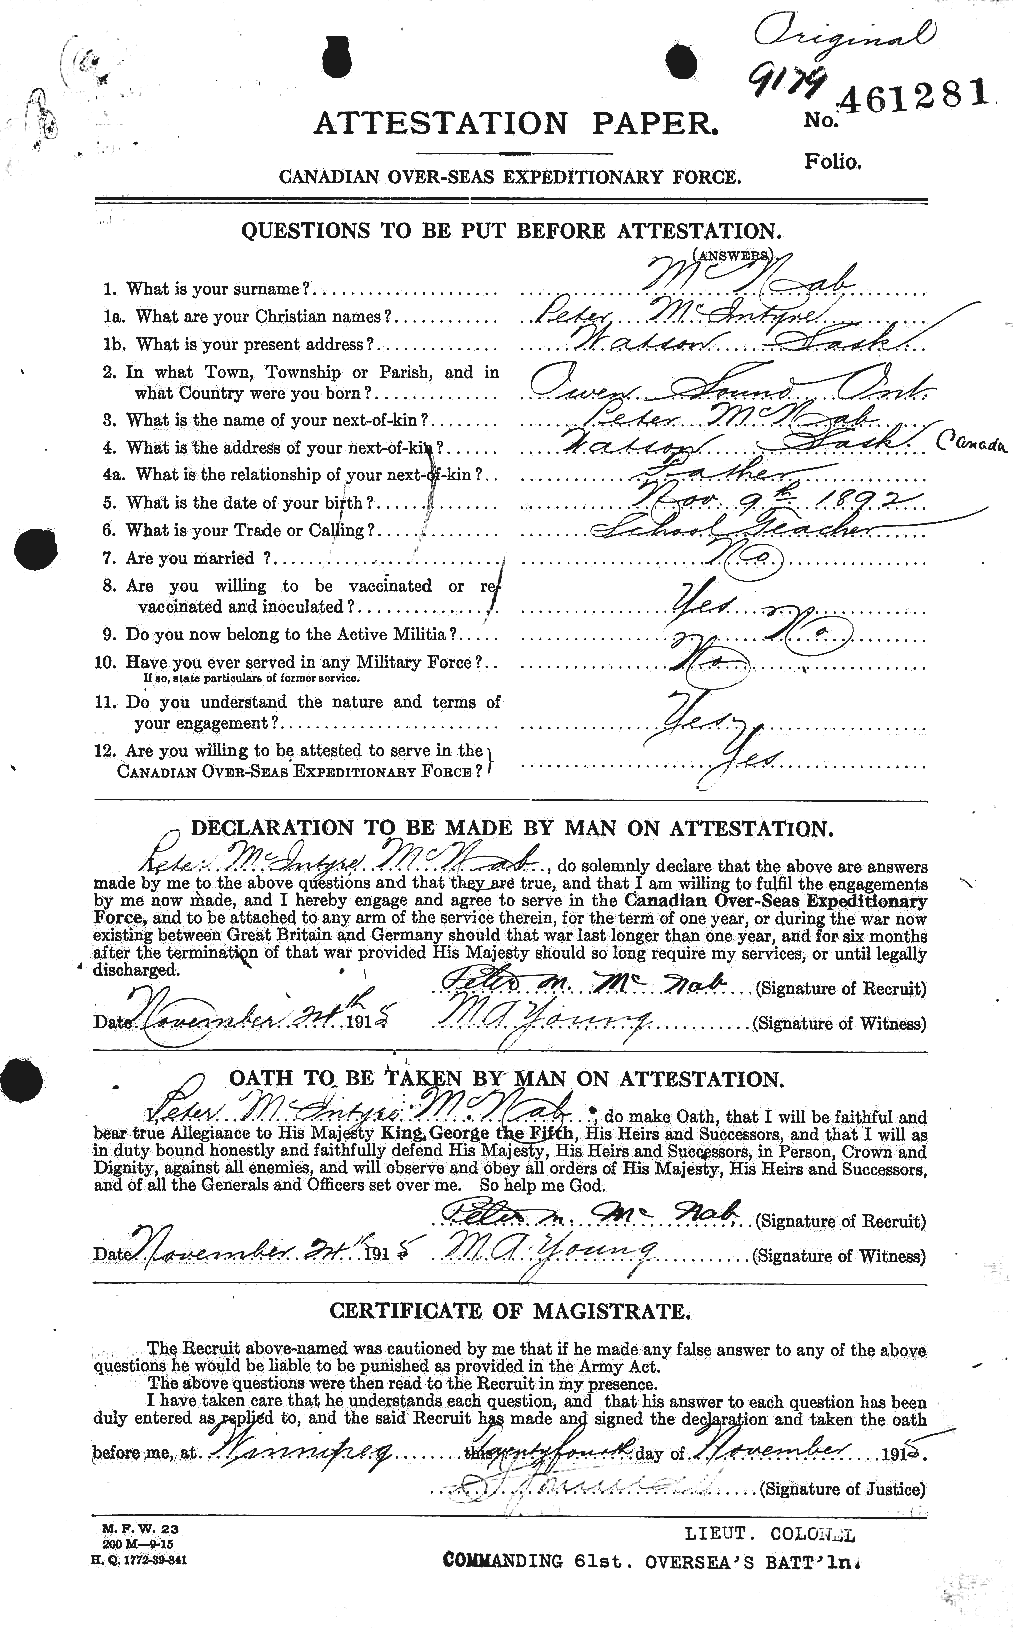 Dossiers du Personnel de la Première Guerre mondiale - CEC 536270a